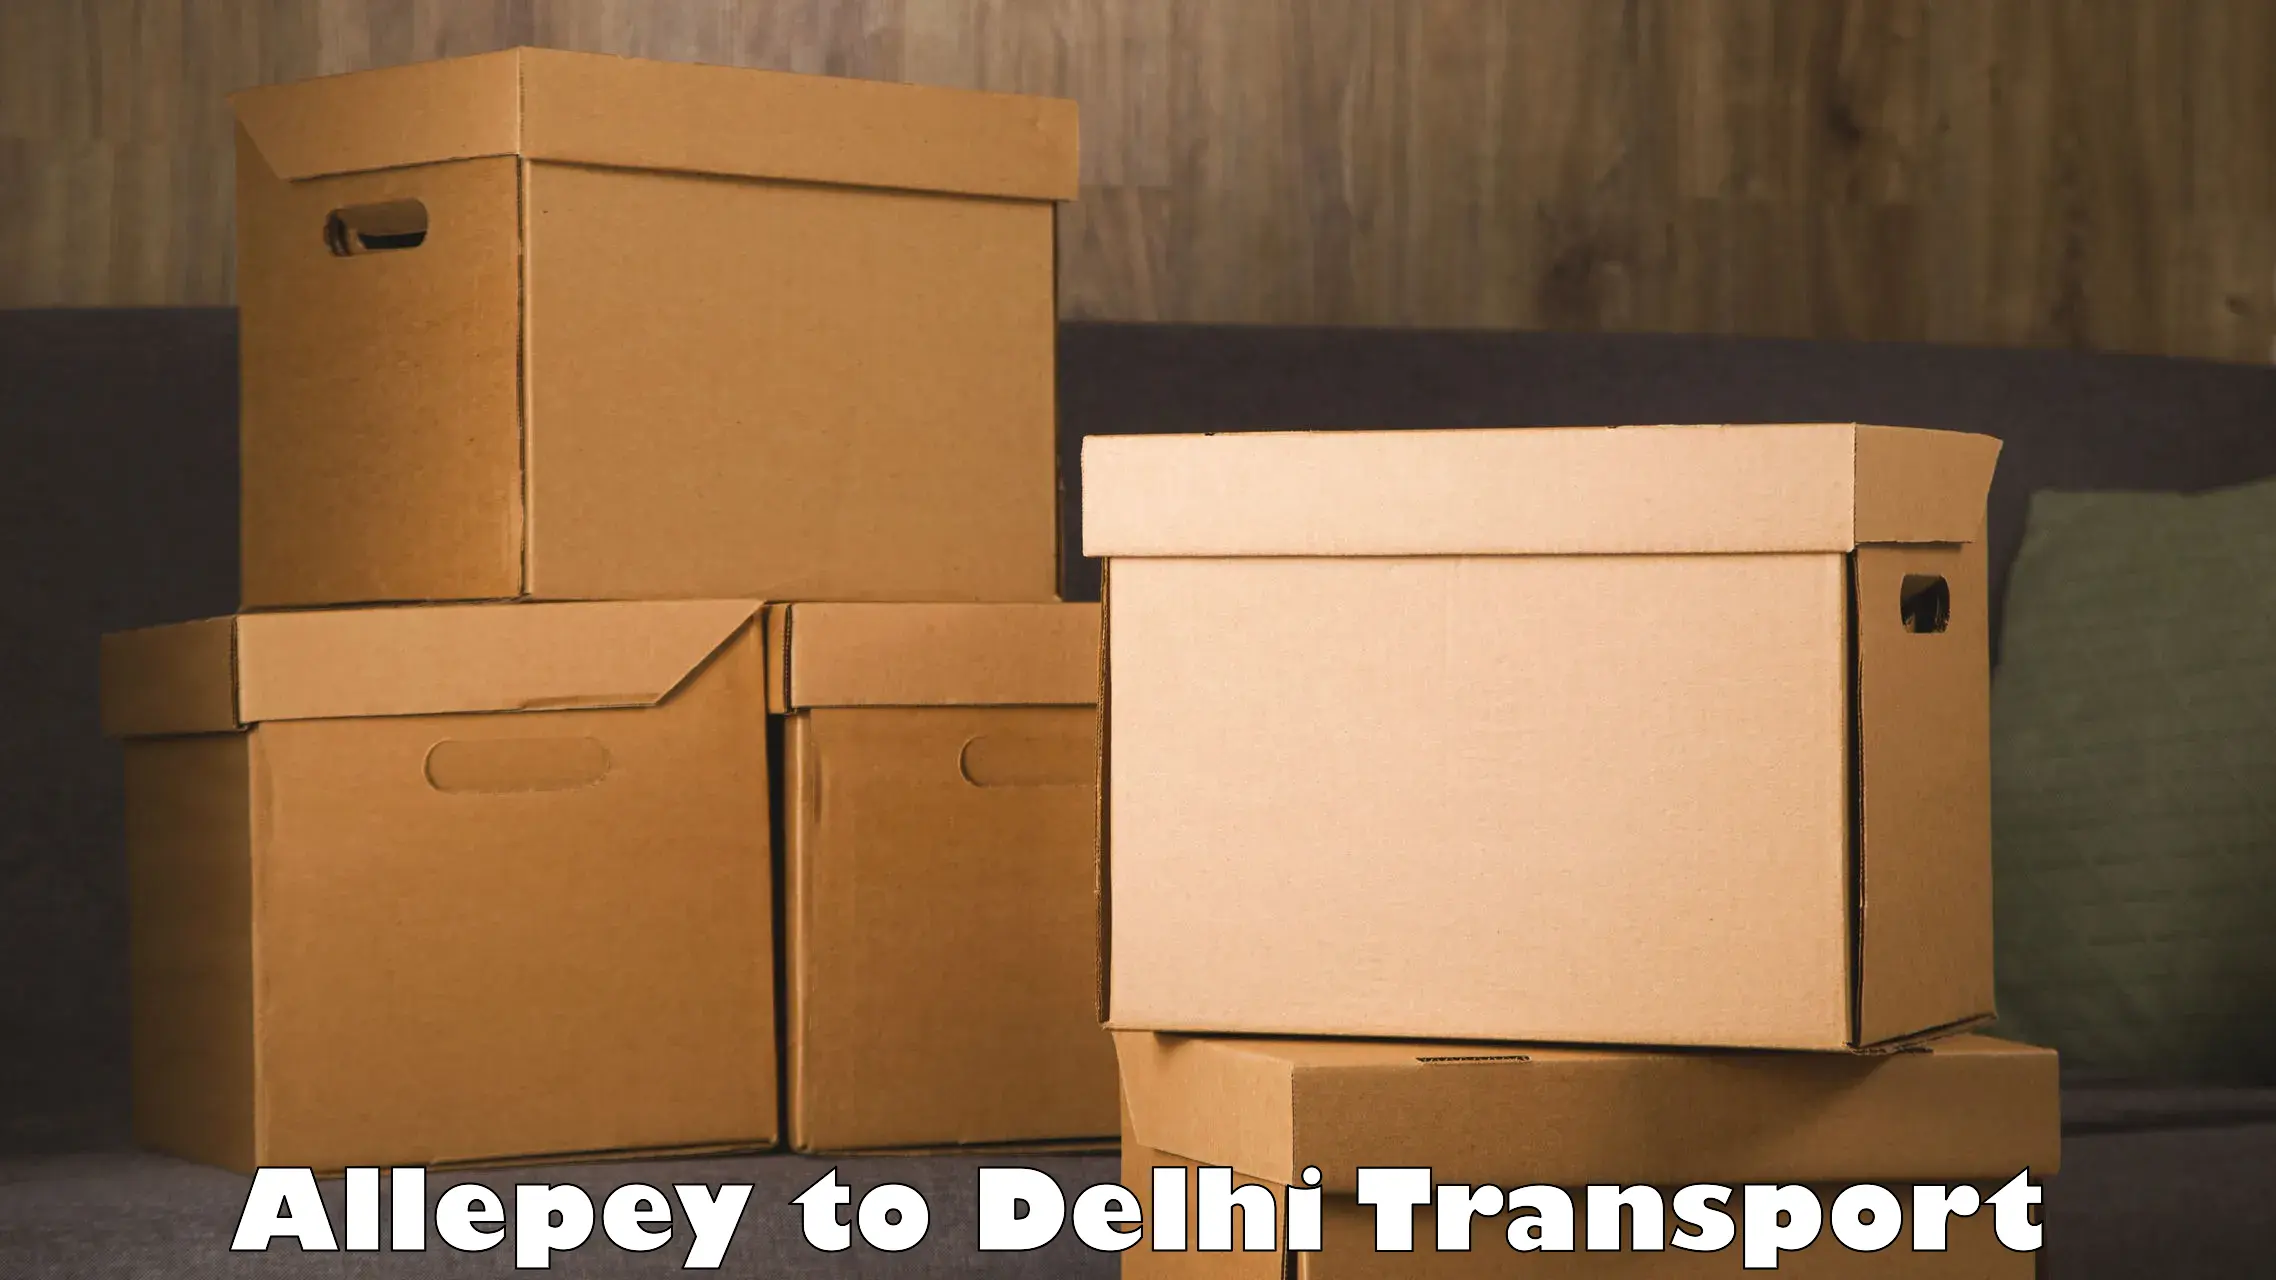 Interstate transport services Allepey to Delhi